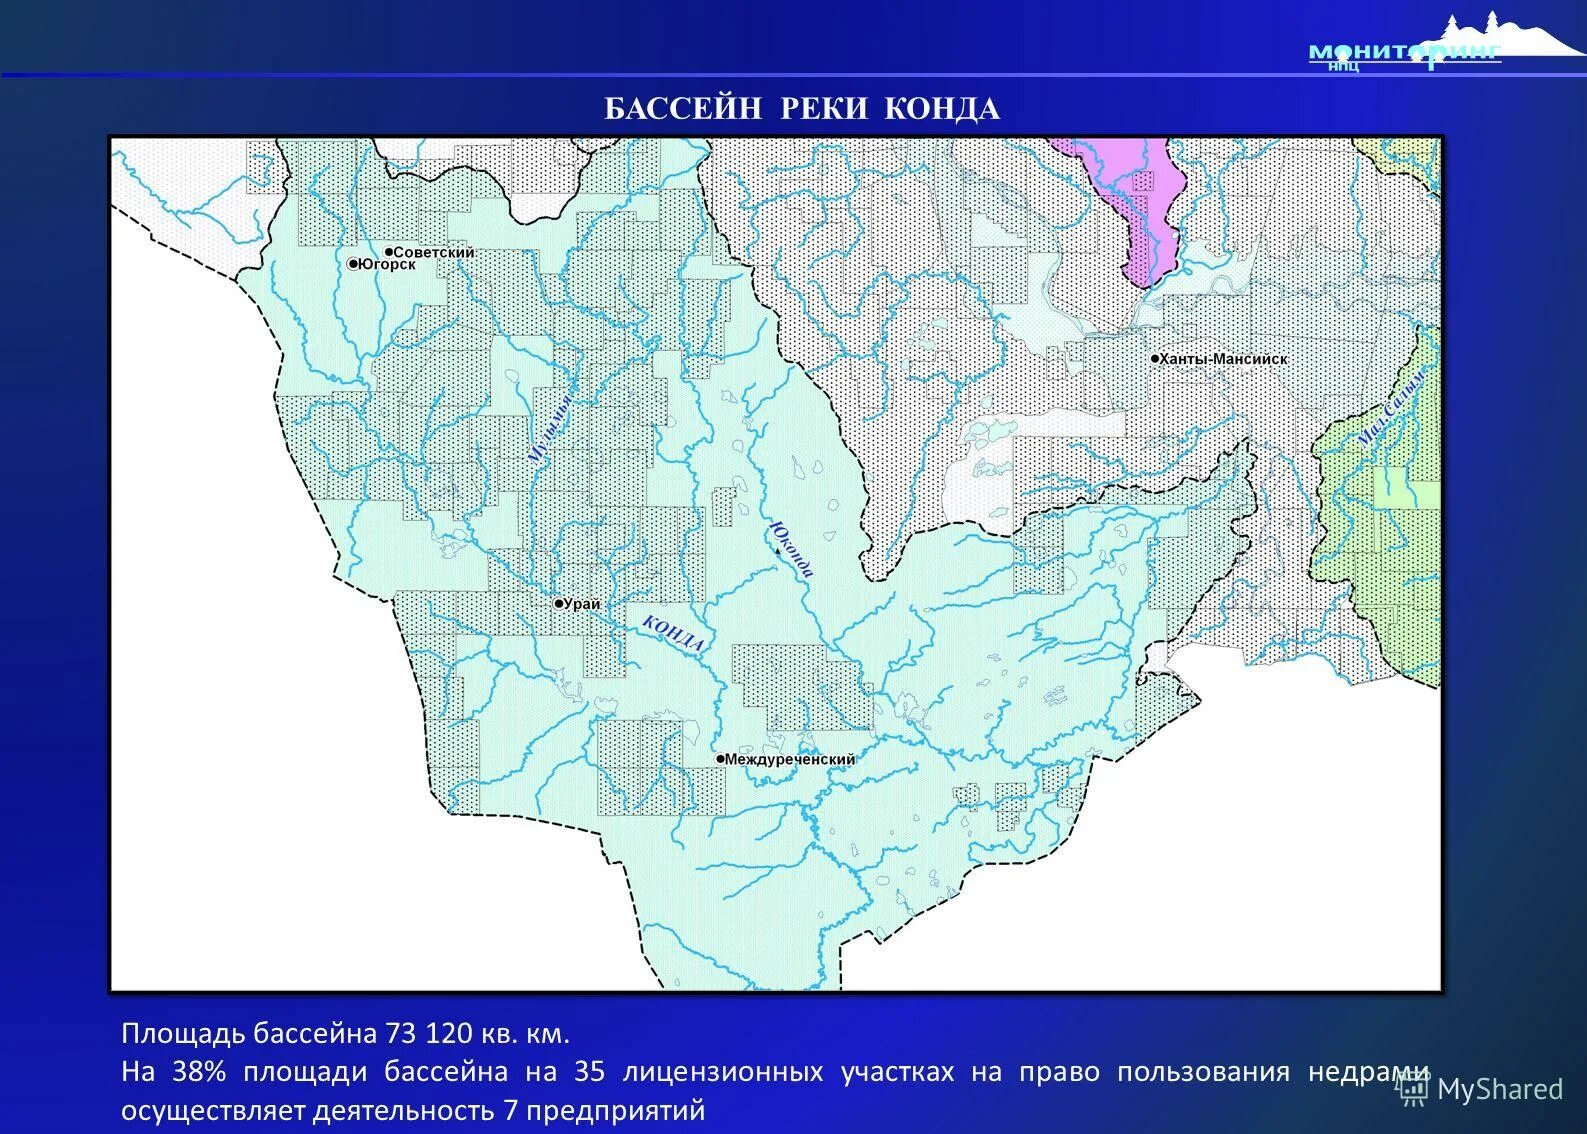 Площадь бассейна реки млн км2. Бассейн реки. Основной Речной бассейн. Бассейновая карта. Река Конда ХМАО на карте.